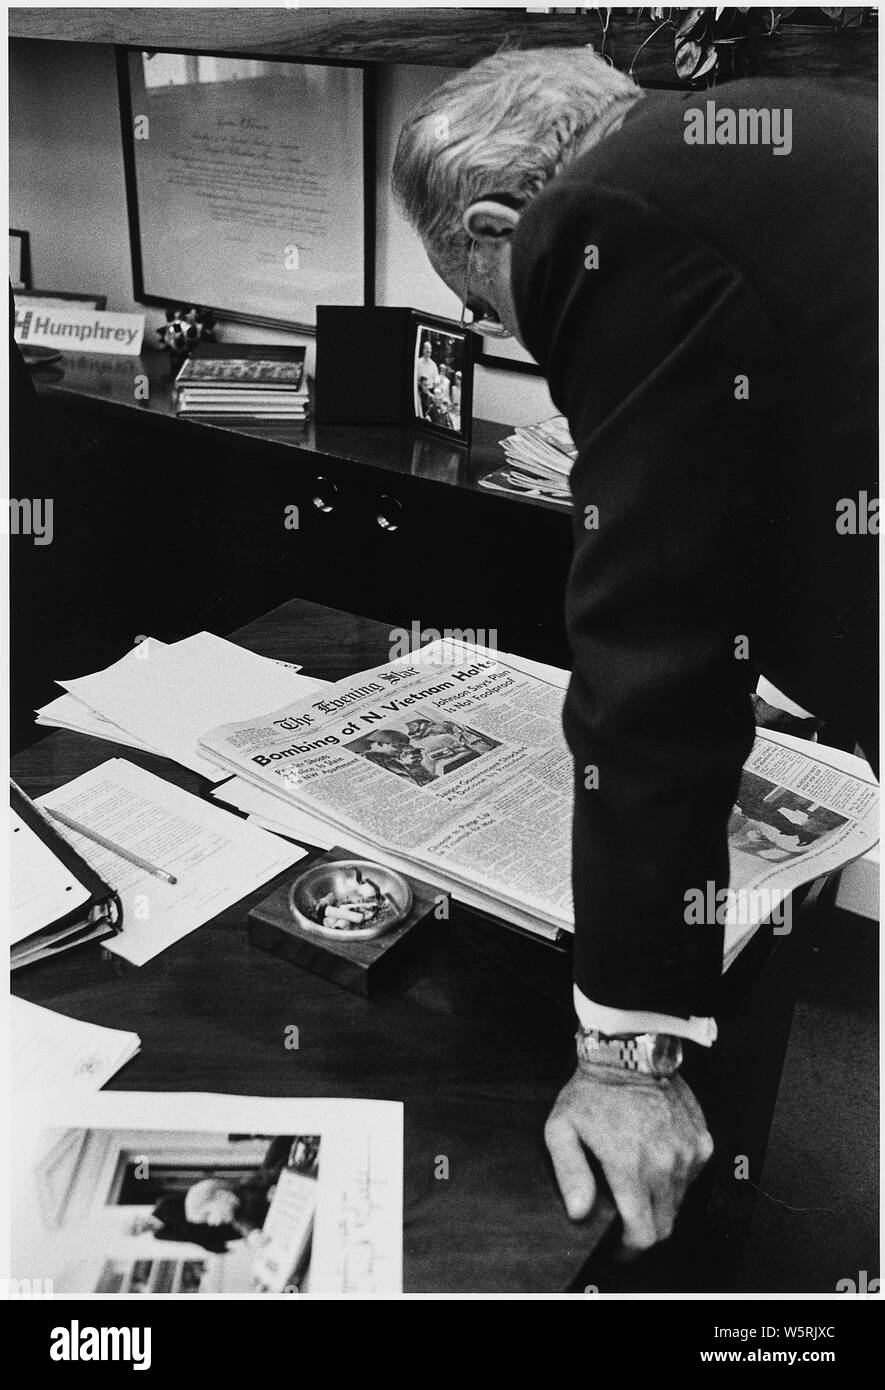 Humor: el Presidente Lyndon B. Johnson lee titular de prensa volver bombardeo detener; alcance y contenido: Ubicación: Oficina de Prensa de la Casa Blanca. Representado: el Presidente Lyndon B. Johnson. Foto de stock